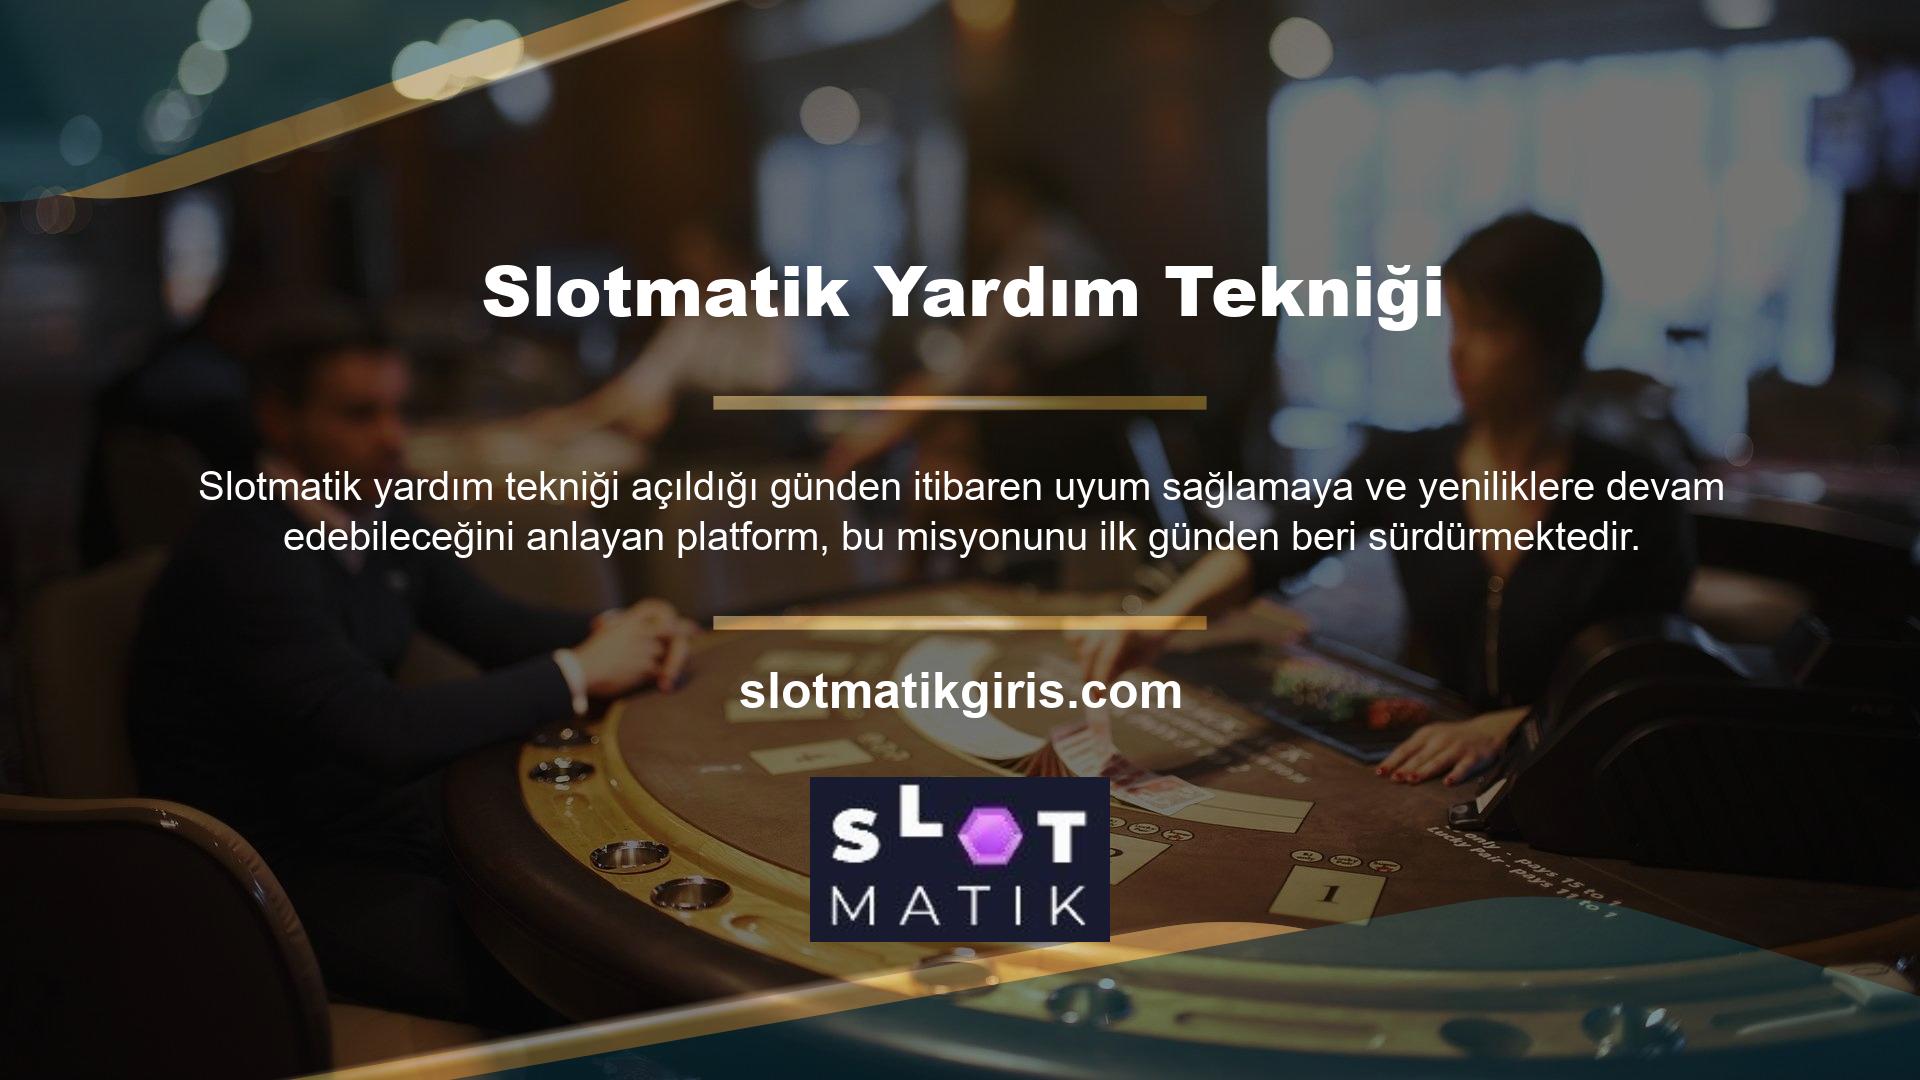 Casino dünyasının lüks hayatını yakından deneyimlemek isteyenler için Slotmatik oyun içerisinde ufak tefek aksaklıklar oluşabilse de aktivasyon yöntemi ile Slotmatik yardım tekniği desteklenen yeni bir giriş adresi ile sistem üyelerinin yaşadığı sorunlar için kalıcı hizmet vermektedir